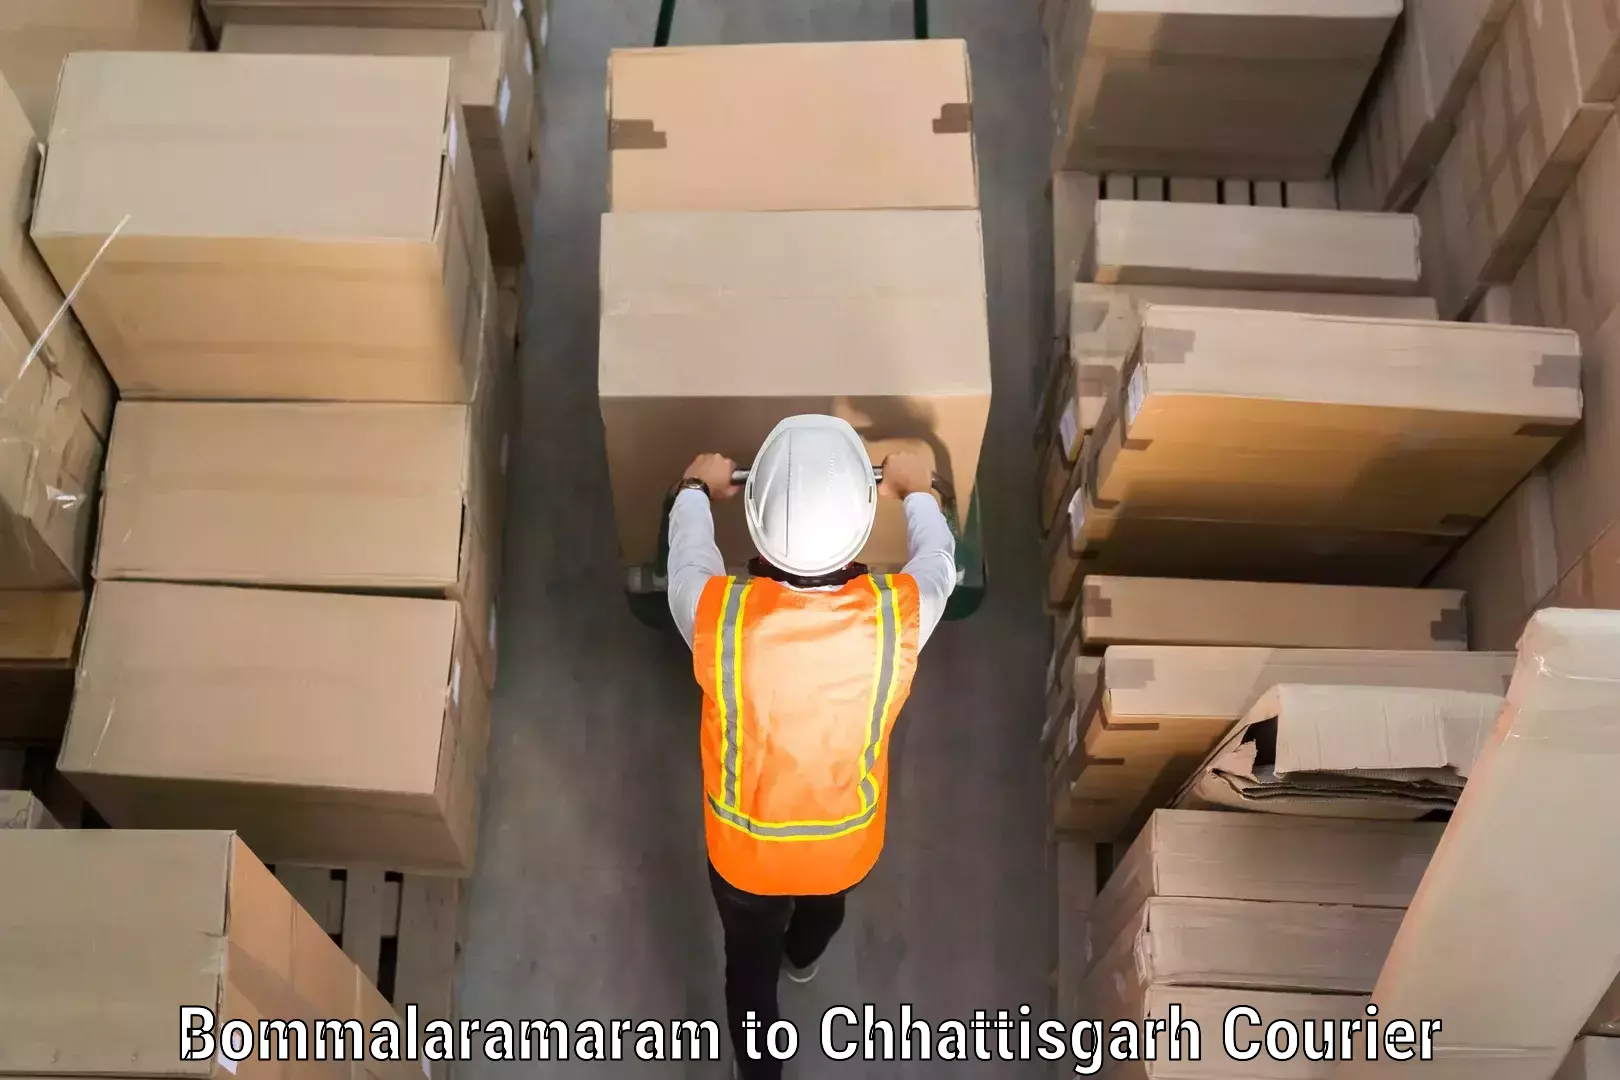 Luggage shipment processing in Bommalaramaram to Chhattisgarh